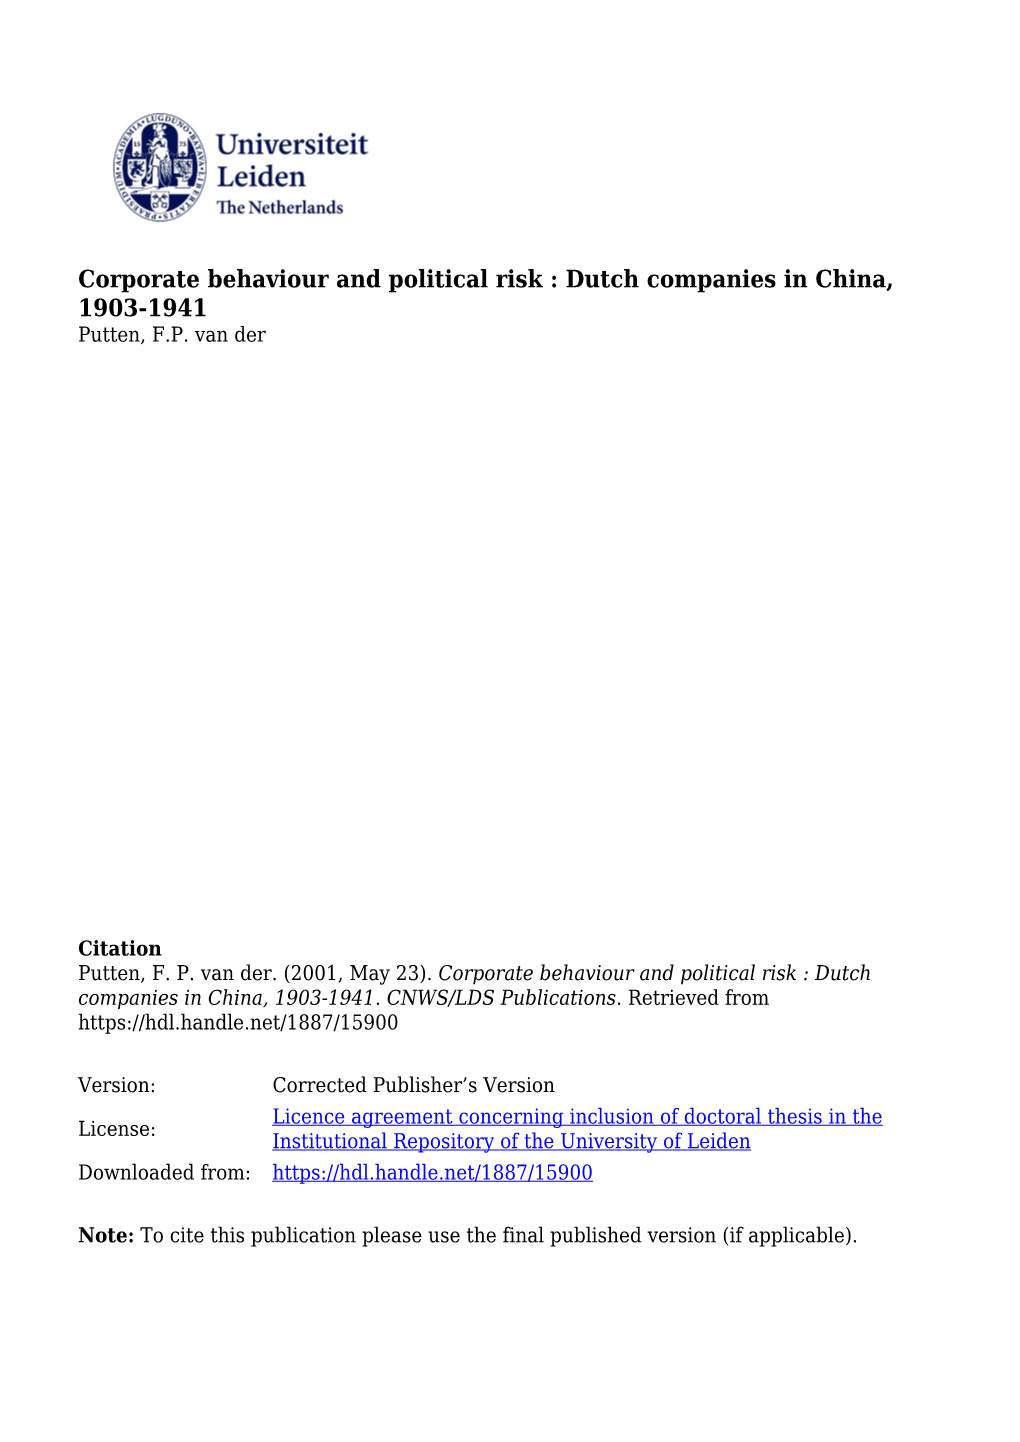 Corporate Behaviour and Political Risk : Dutch Companies in China, 1903-1941 Putten, F.P